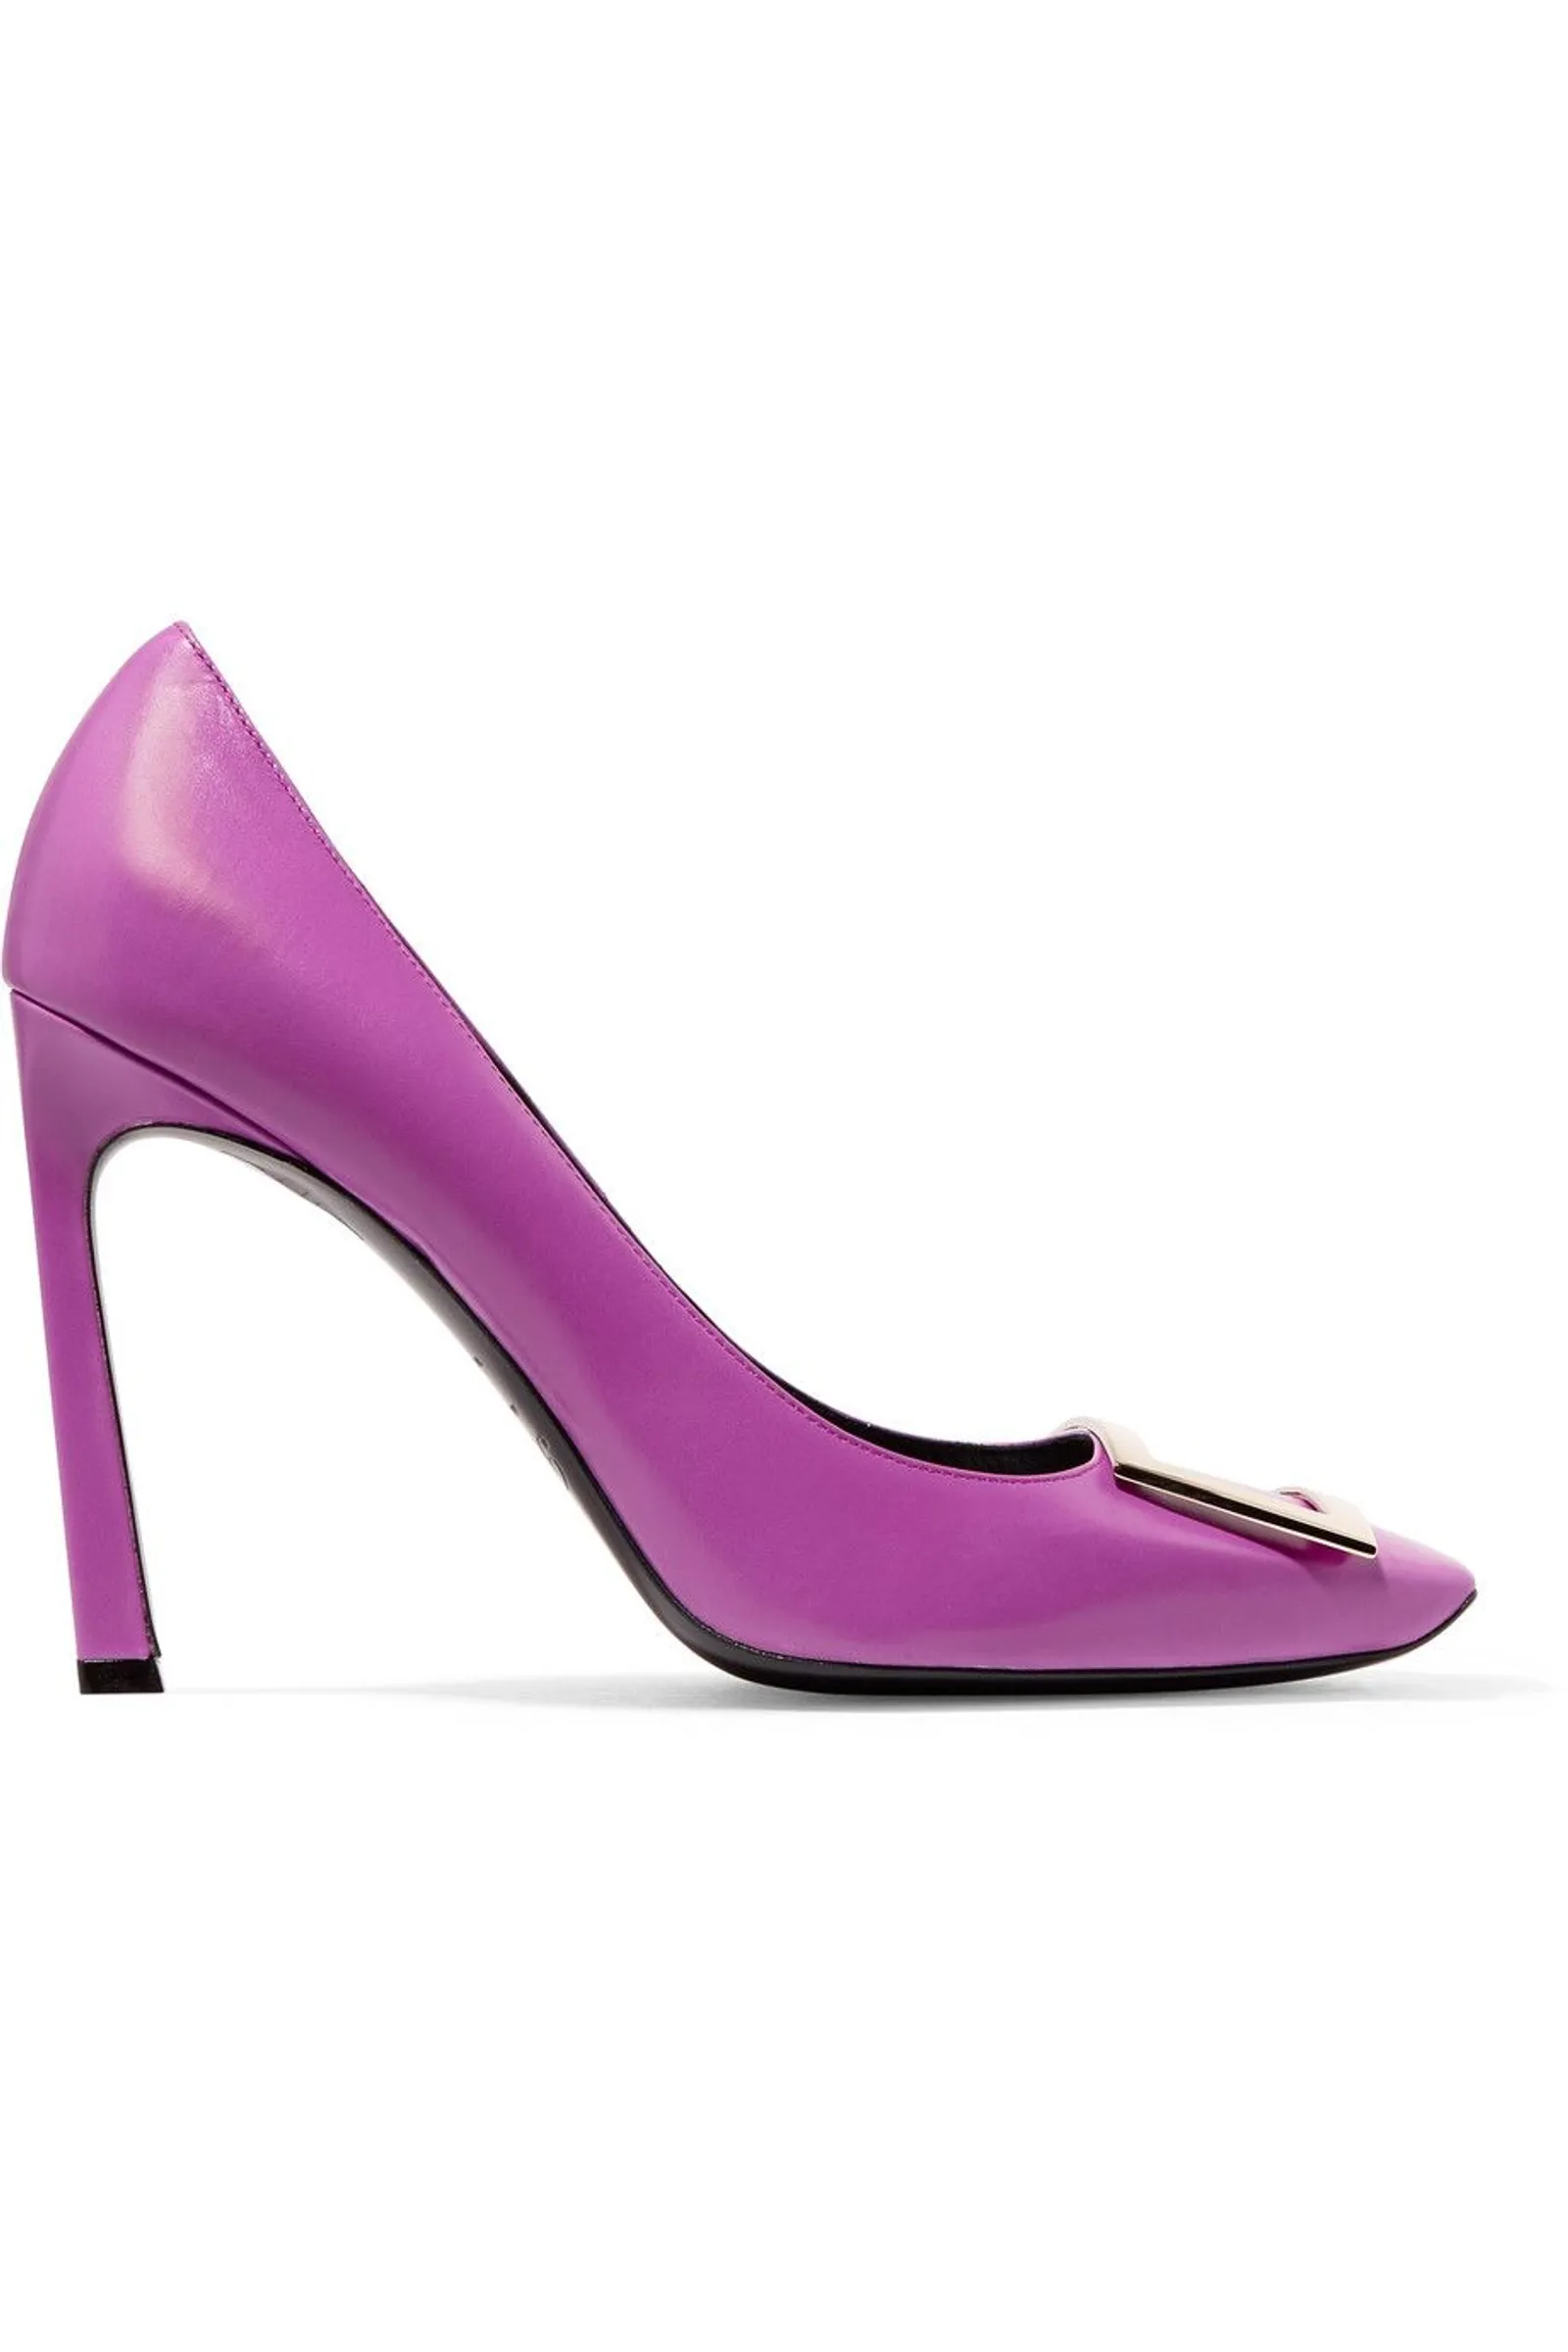 #PopbelaOOTD: Jangan Hitam Terus, Sesekali Coba Sepatu Pink/Purple